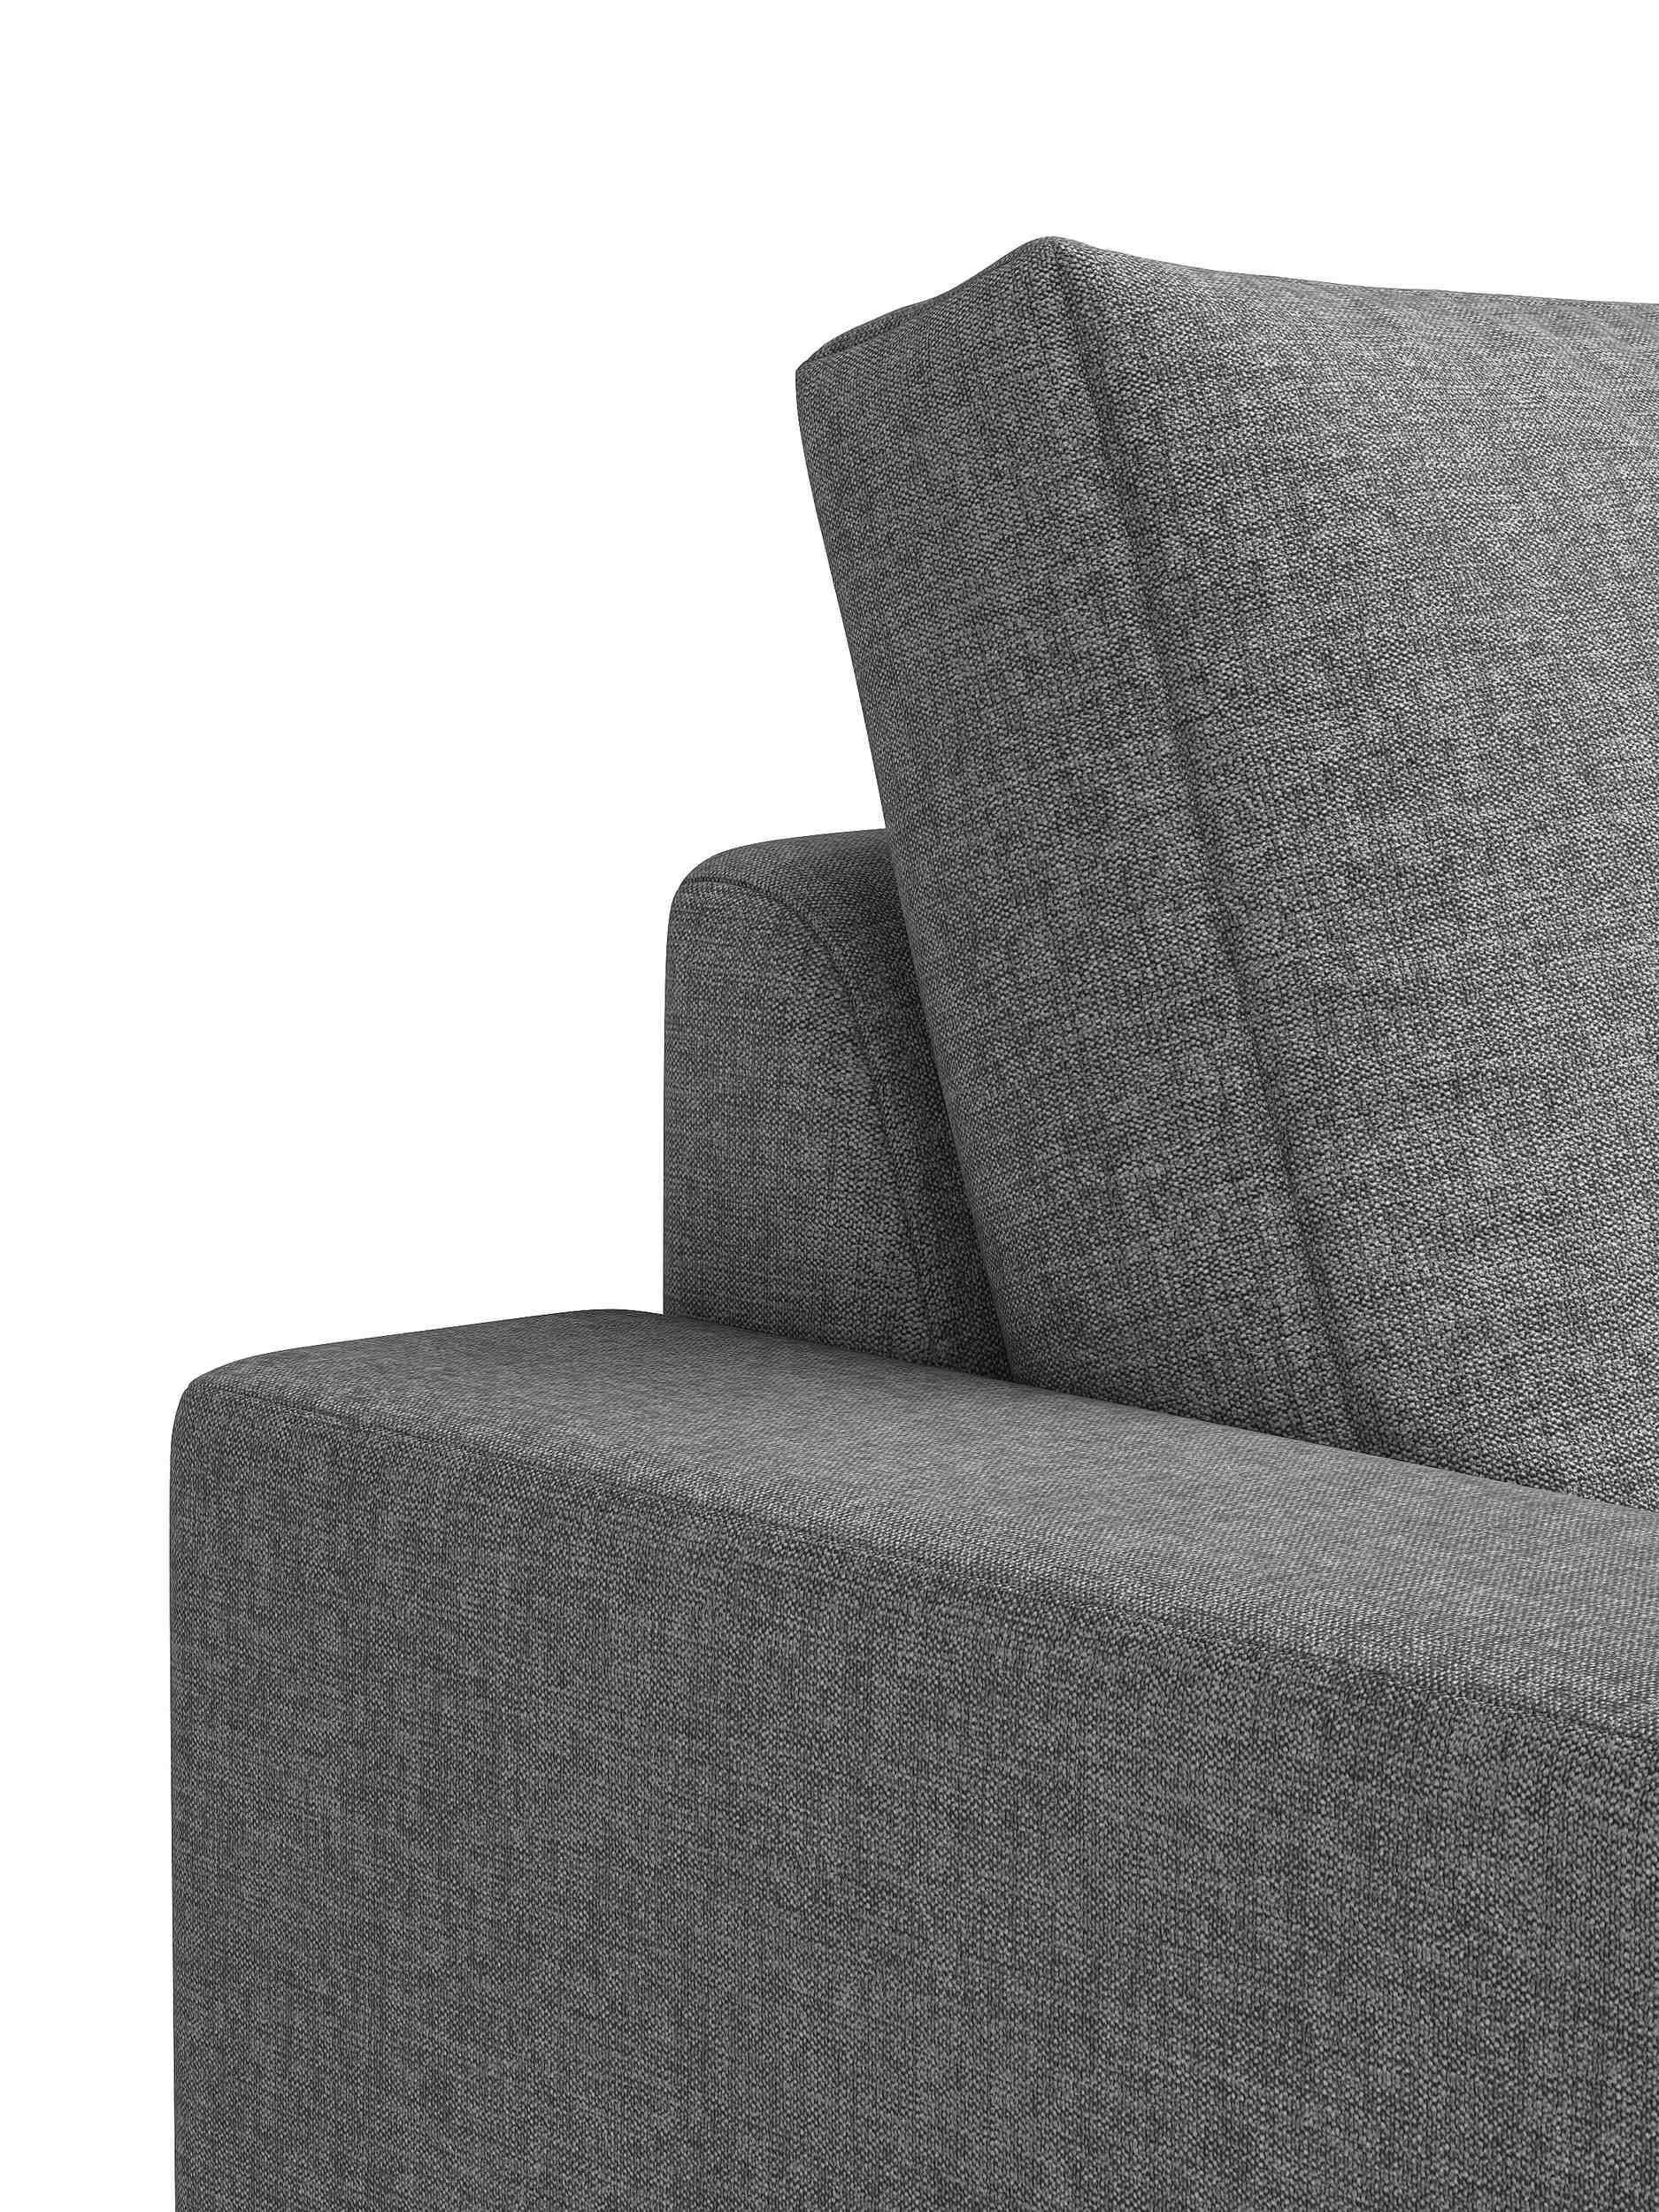 Erling, stellbar, 2-Sitzer, Rückenlehne, made Raum 3-Sitzer und in Design, Modern frei Europa mit Stylefy Armlehnen Sitzkomfort, Sofa, im